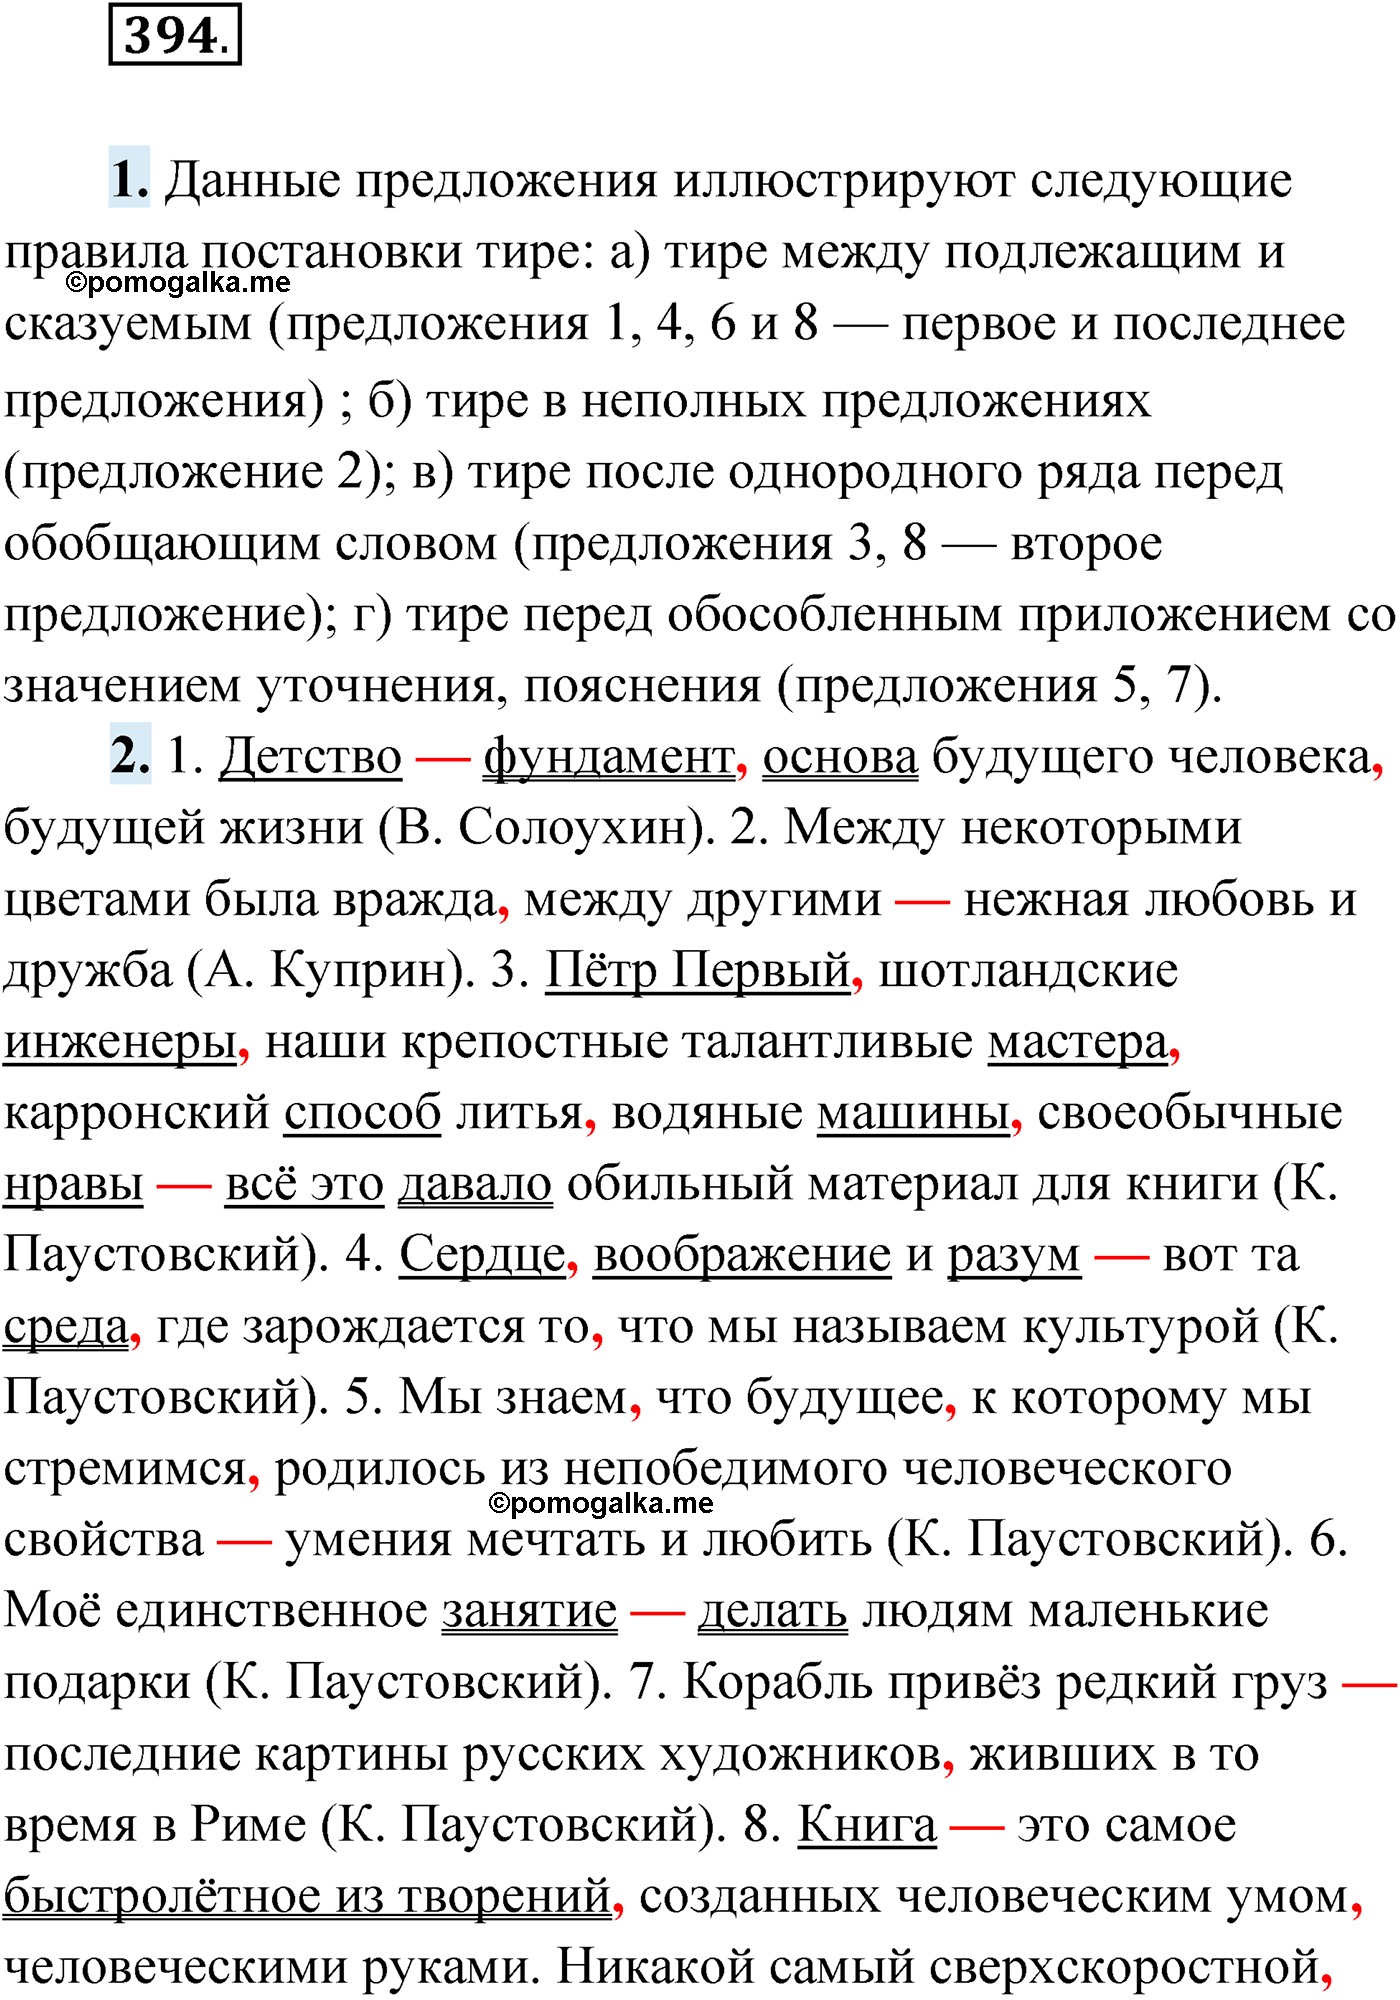 упражнение №394 русский язык 9 класс Мурина 2019 год